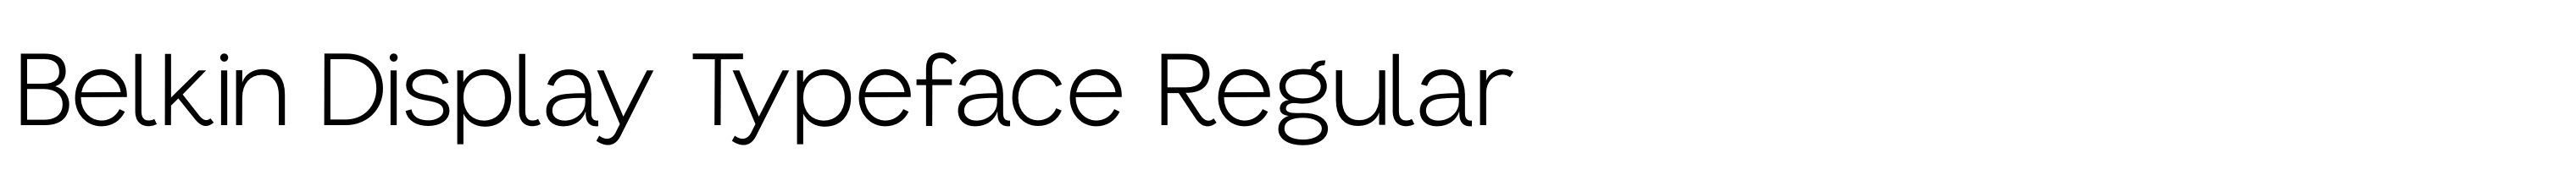 Belkin Display Typeface Regular